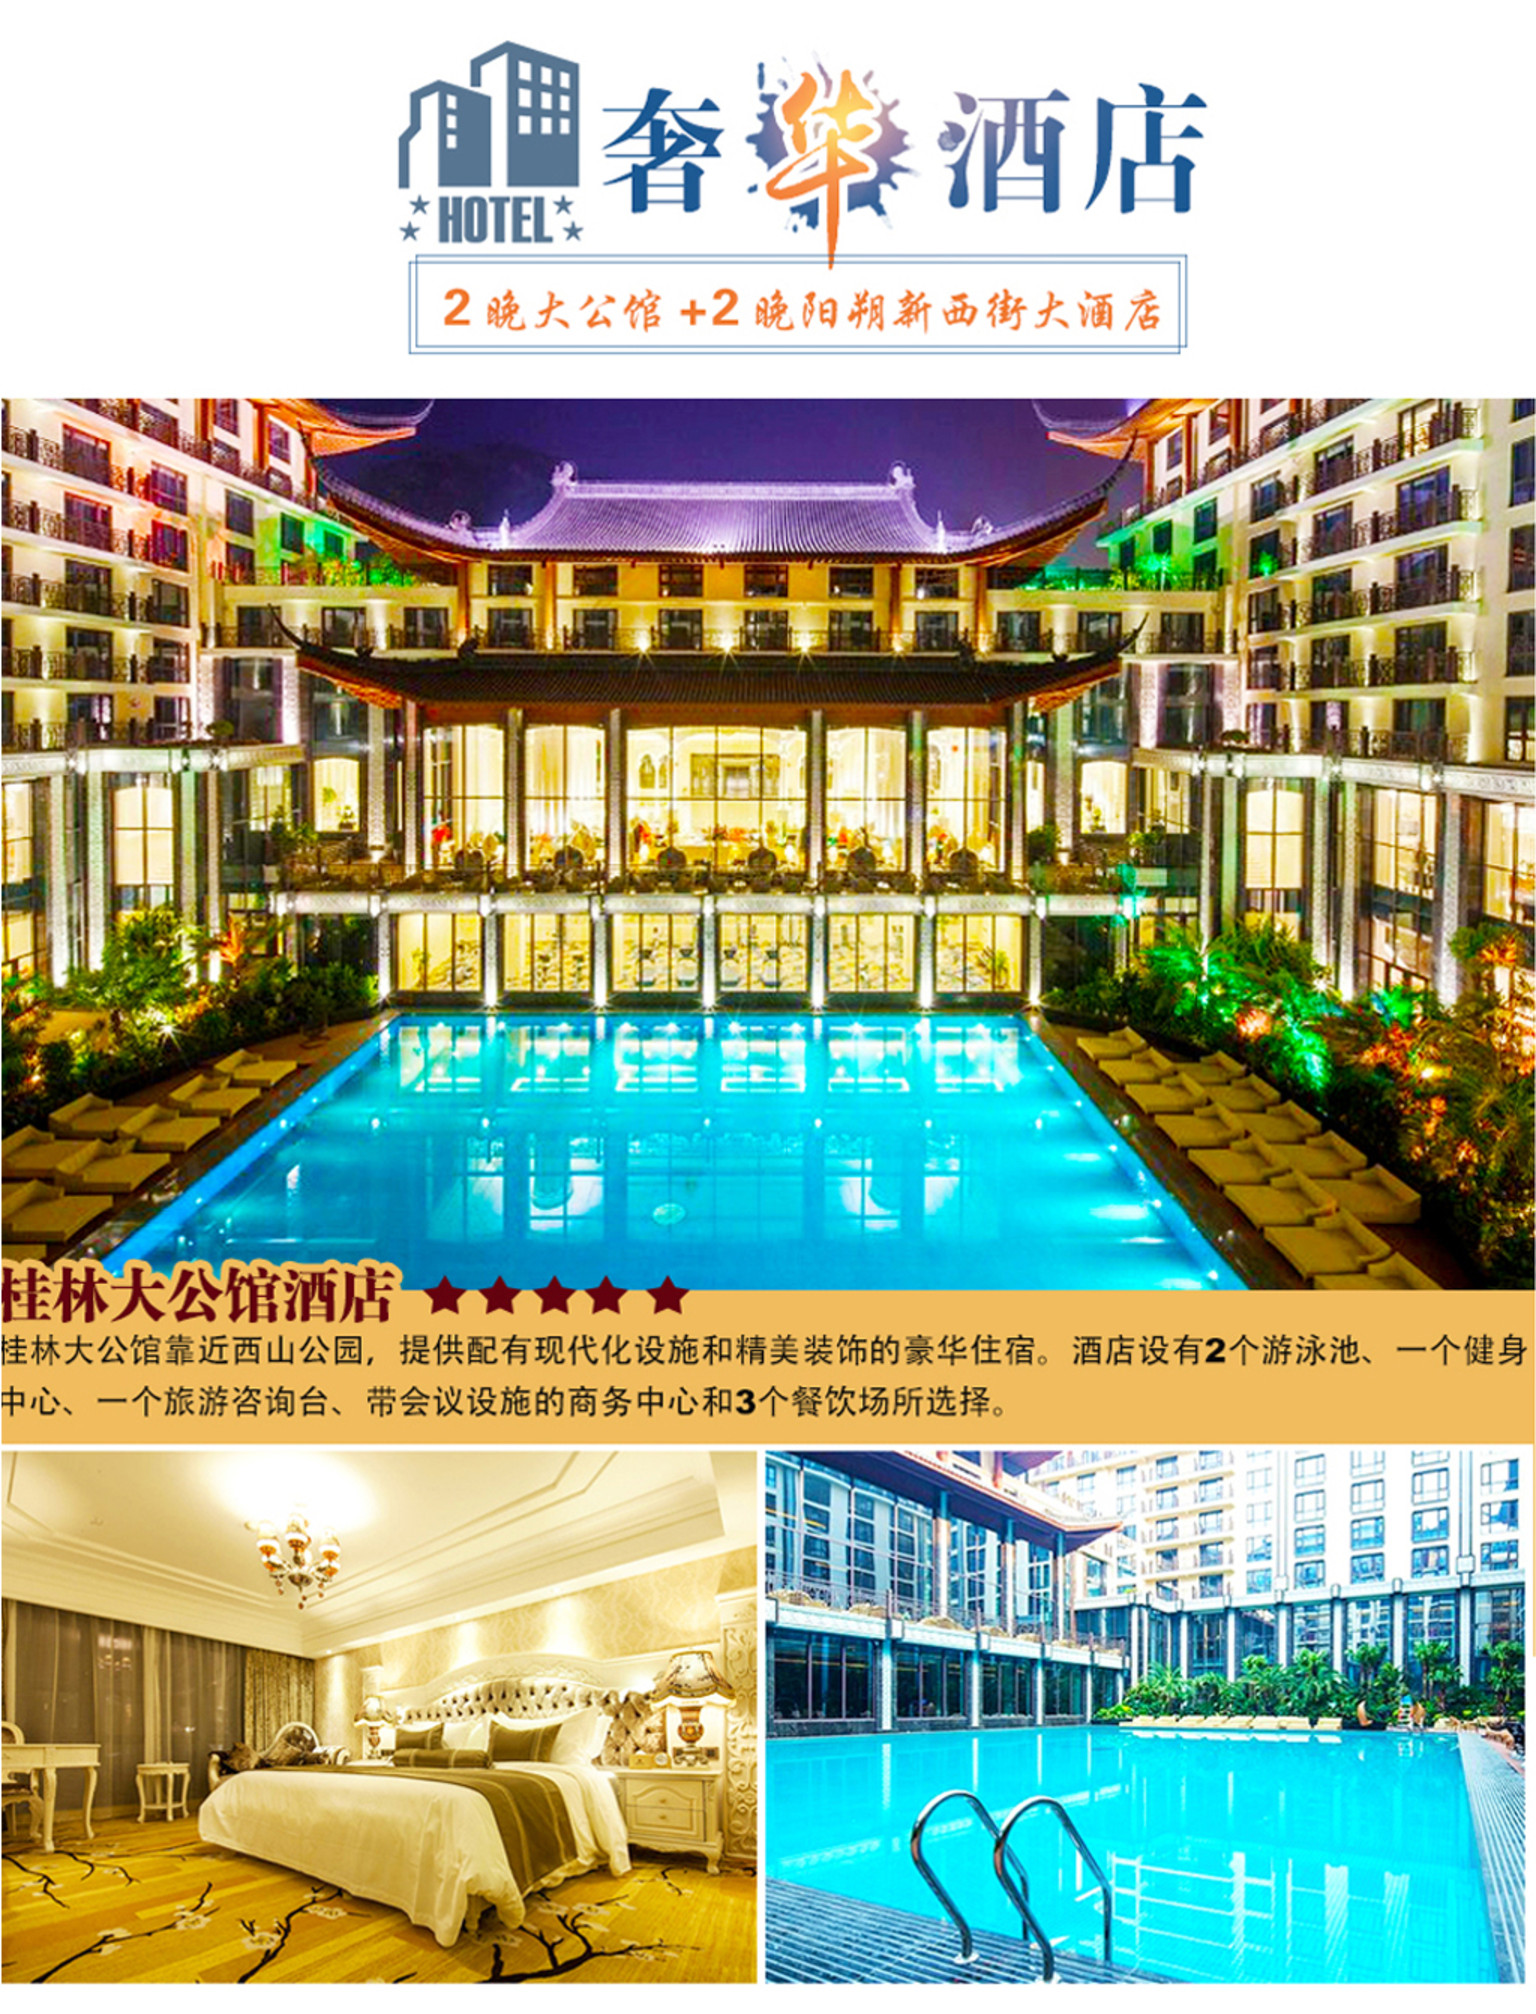 桂林大公馆(2014-2016年度桂林最热门酒店)为桂林首家五星级山水度假